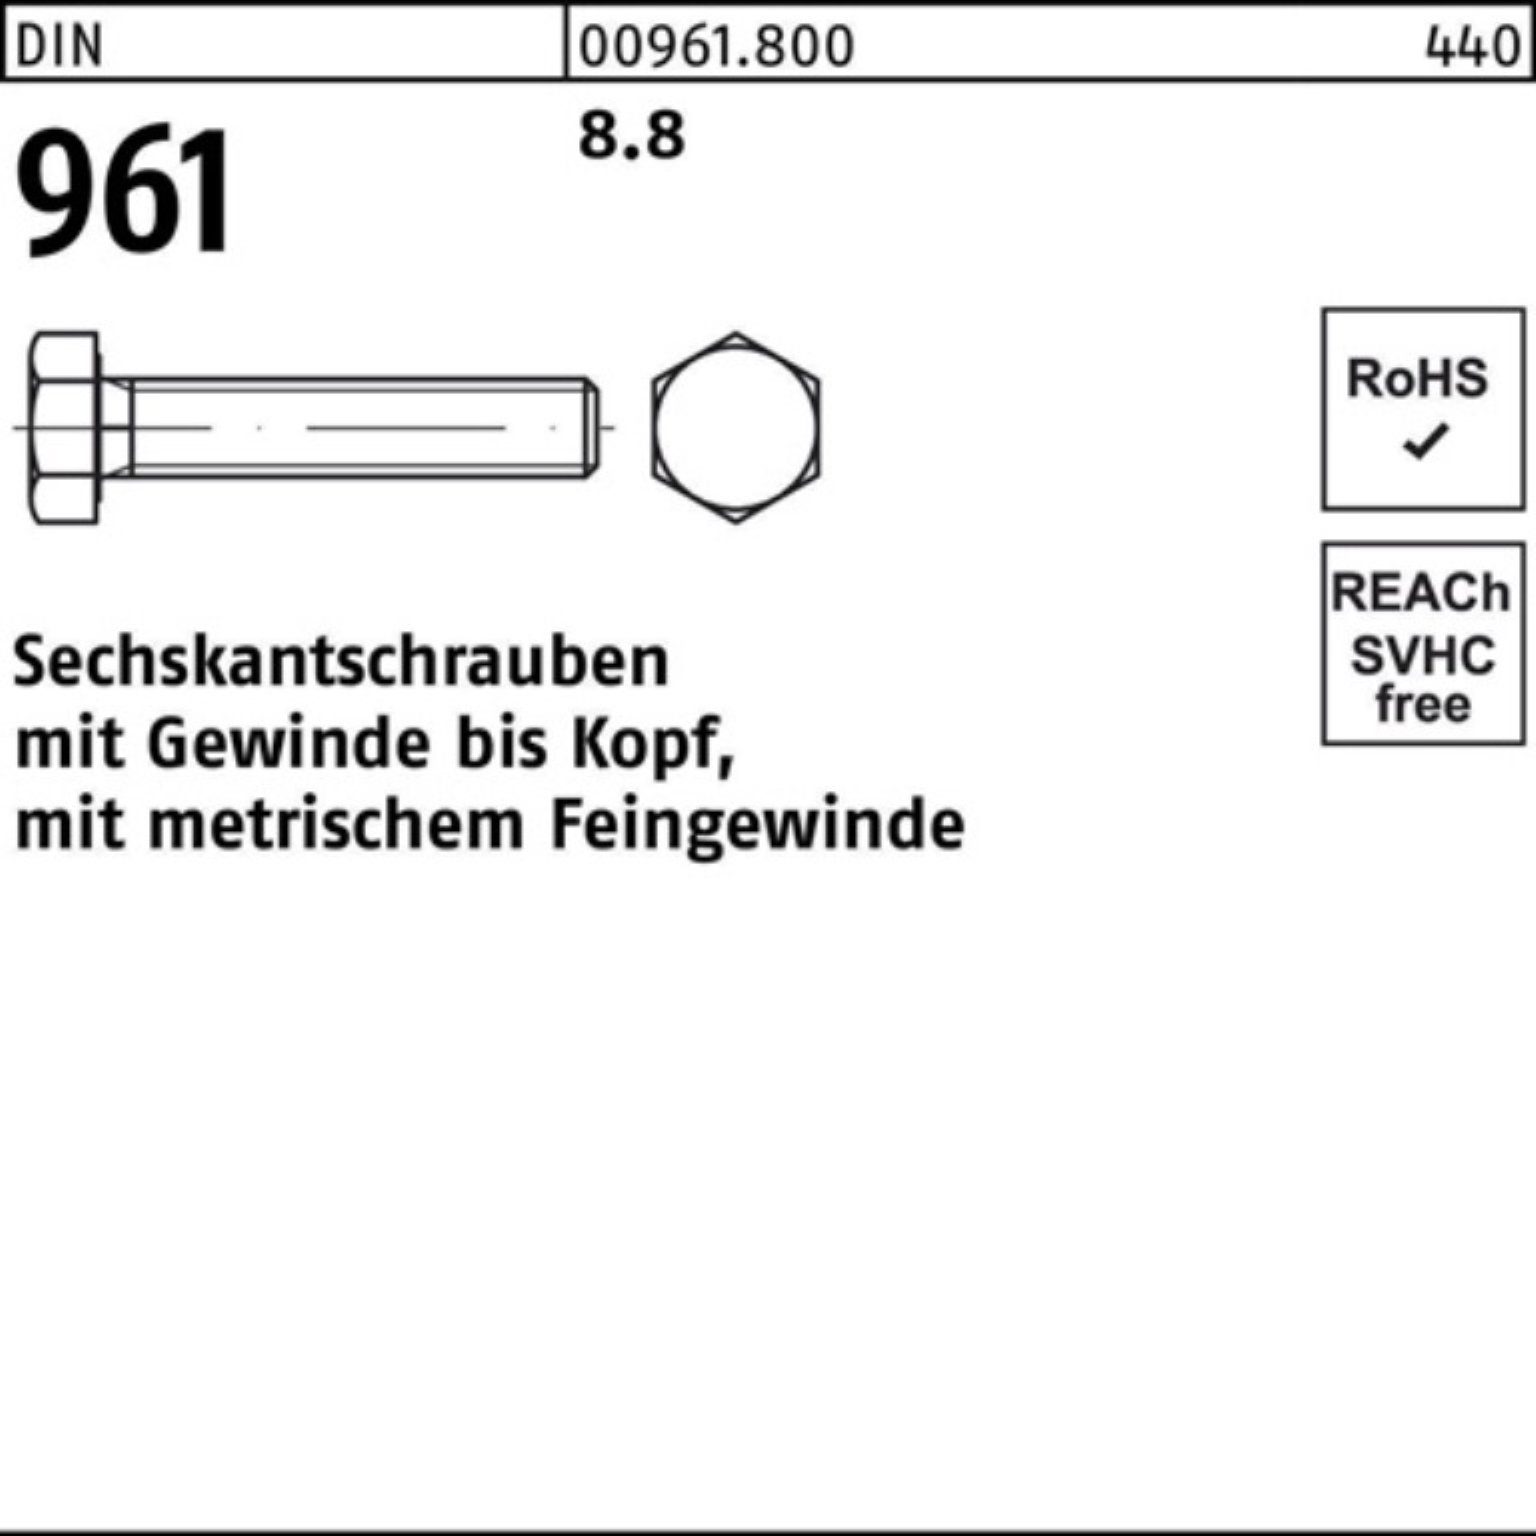 Sechskantschraube Reyher DIN 100er DIN 961 Stück Pack 25 M16x1,5x130 VG Sechskantschraube 8.8